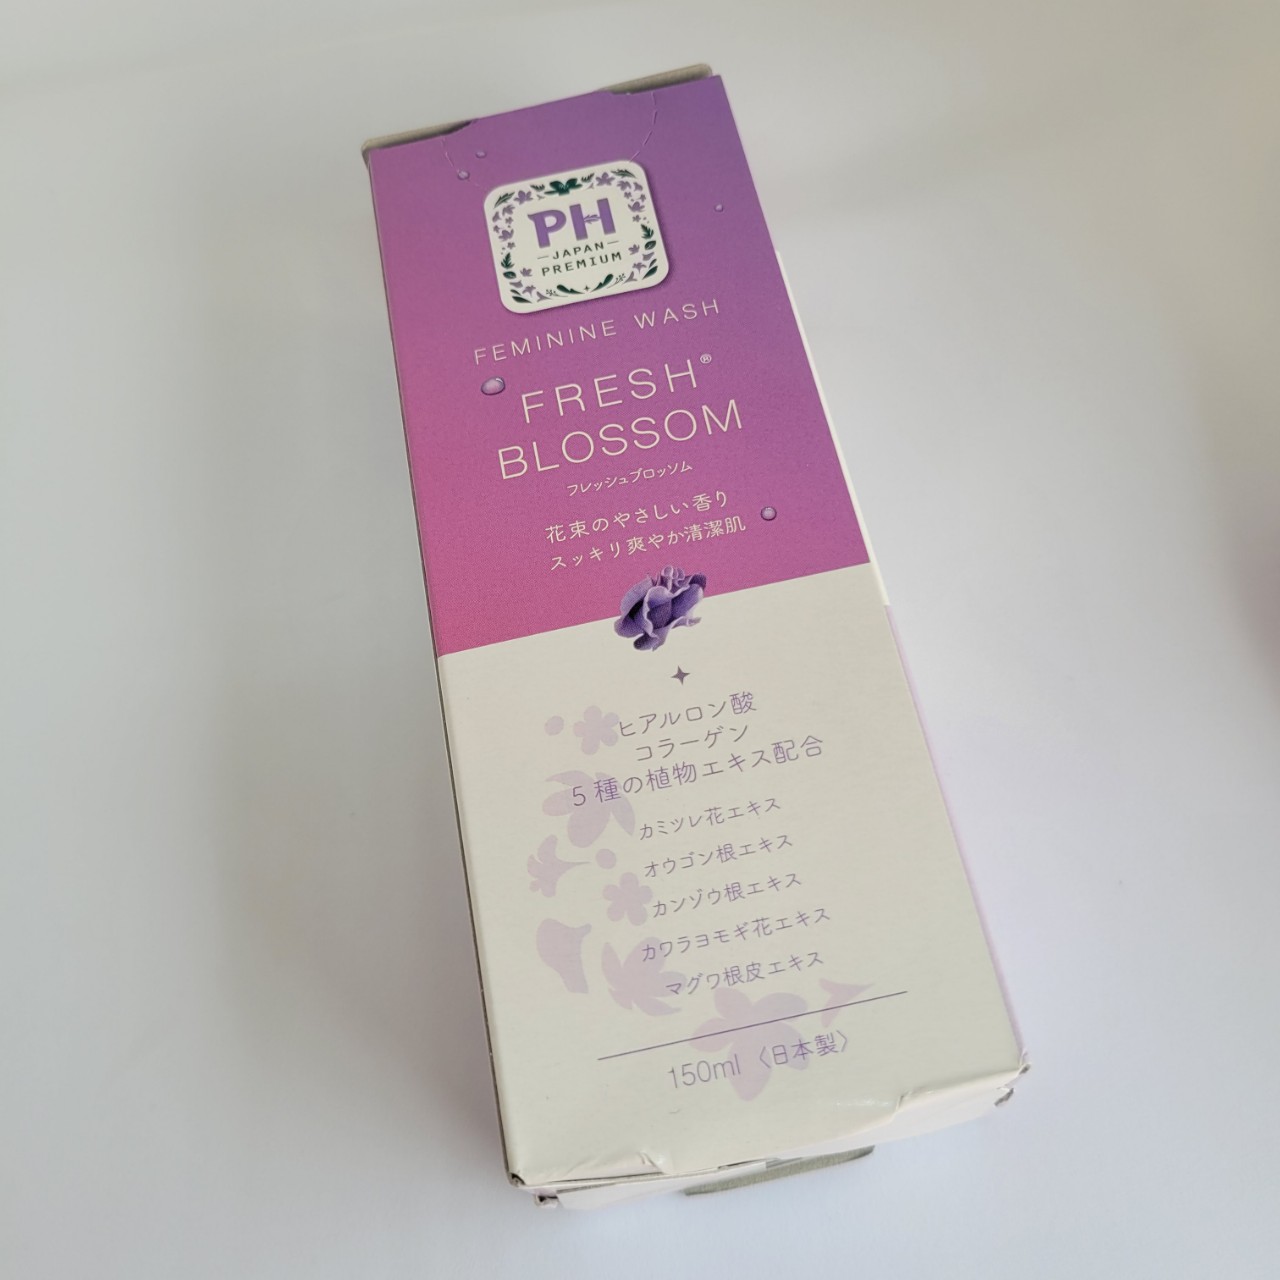 Dung dịch vệ sinh phụ nữ PH Care hương hoa 150ml từ Nhật Bản (FRESH BLOSSOM)